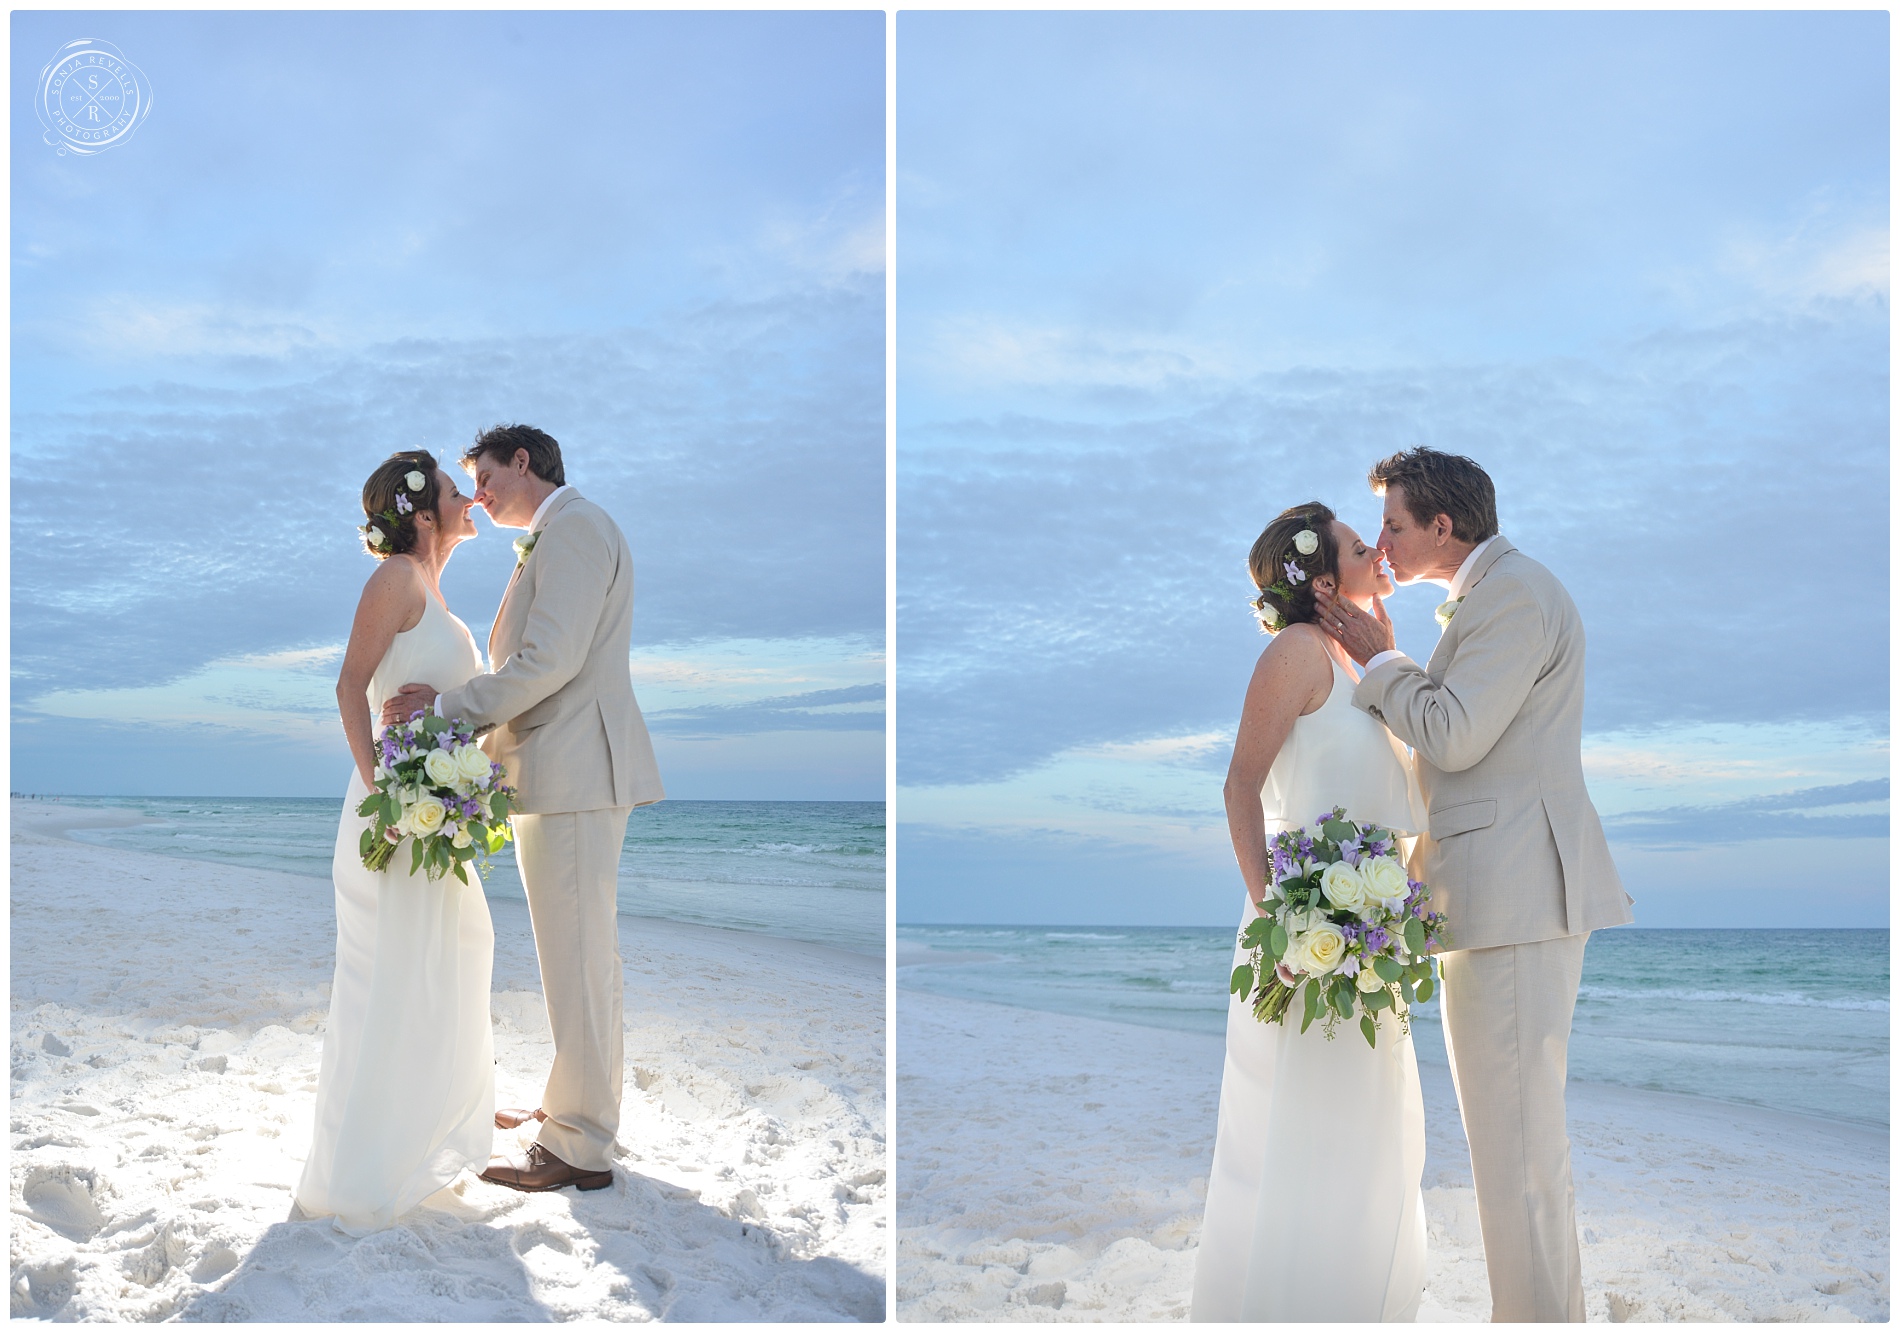 Seaside Wedding- Seaside Wedding Photographer,Wedding Photography,